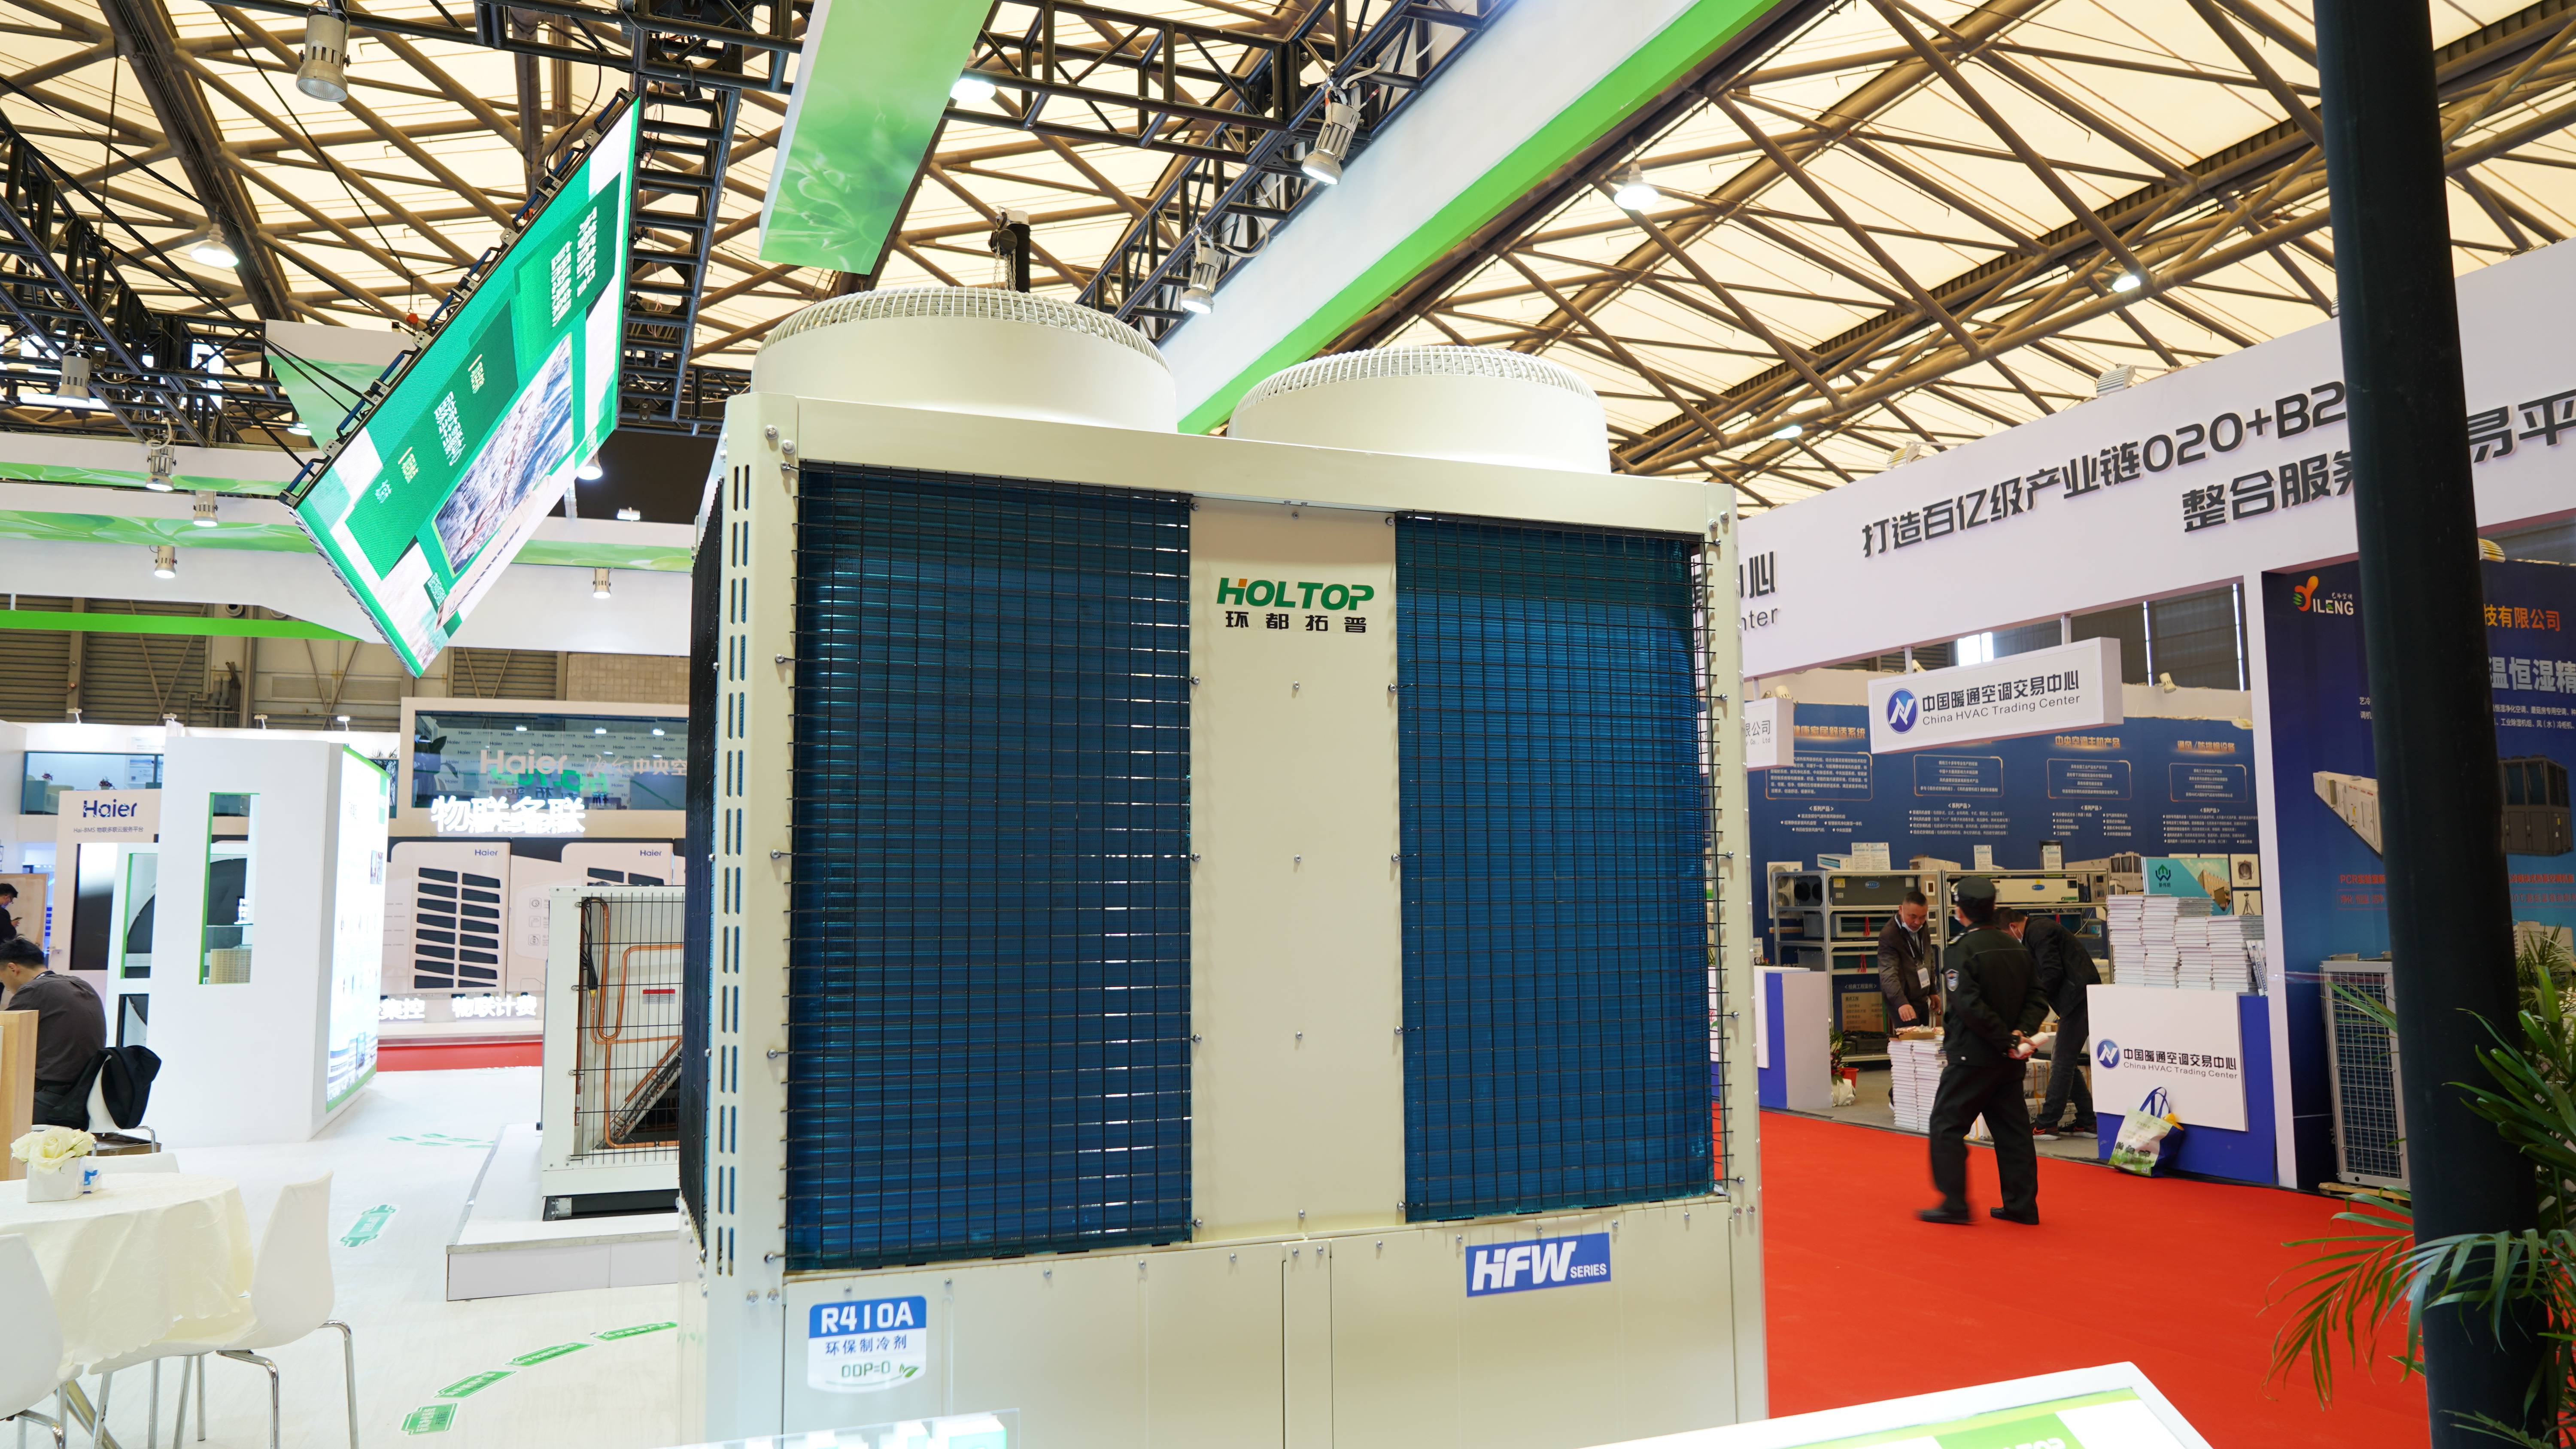 Modulárne vzduchom chladené chladiace tepelné čerpadlo uvádzanie nového produktu na trh CR2021 Holtop